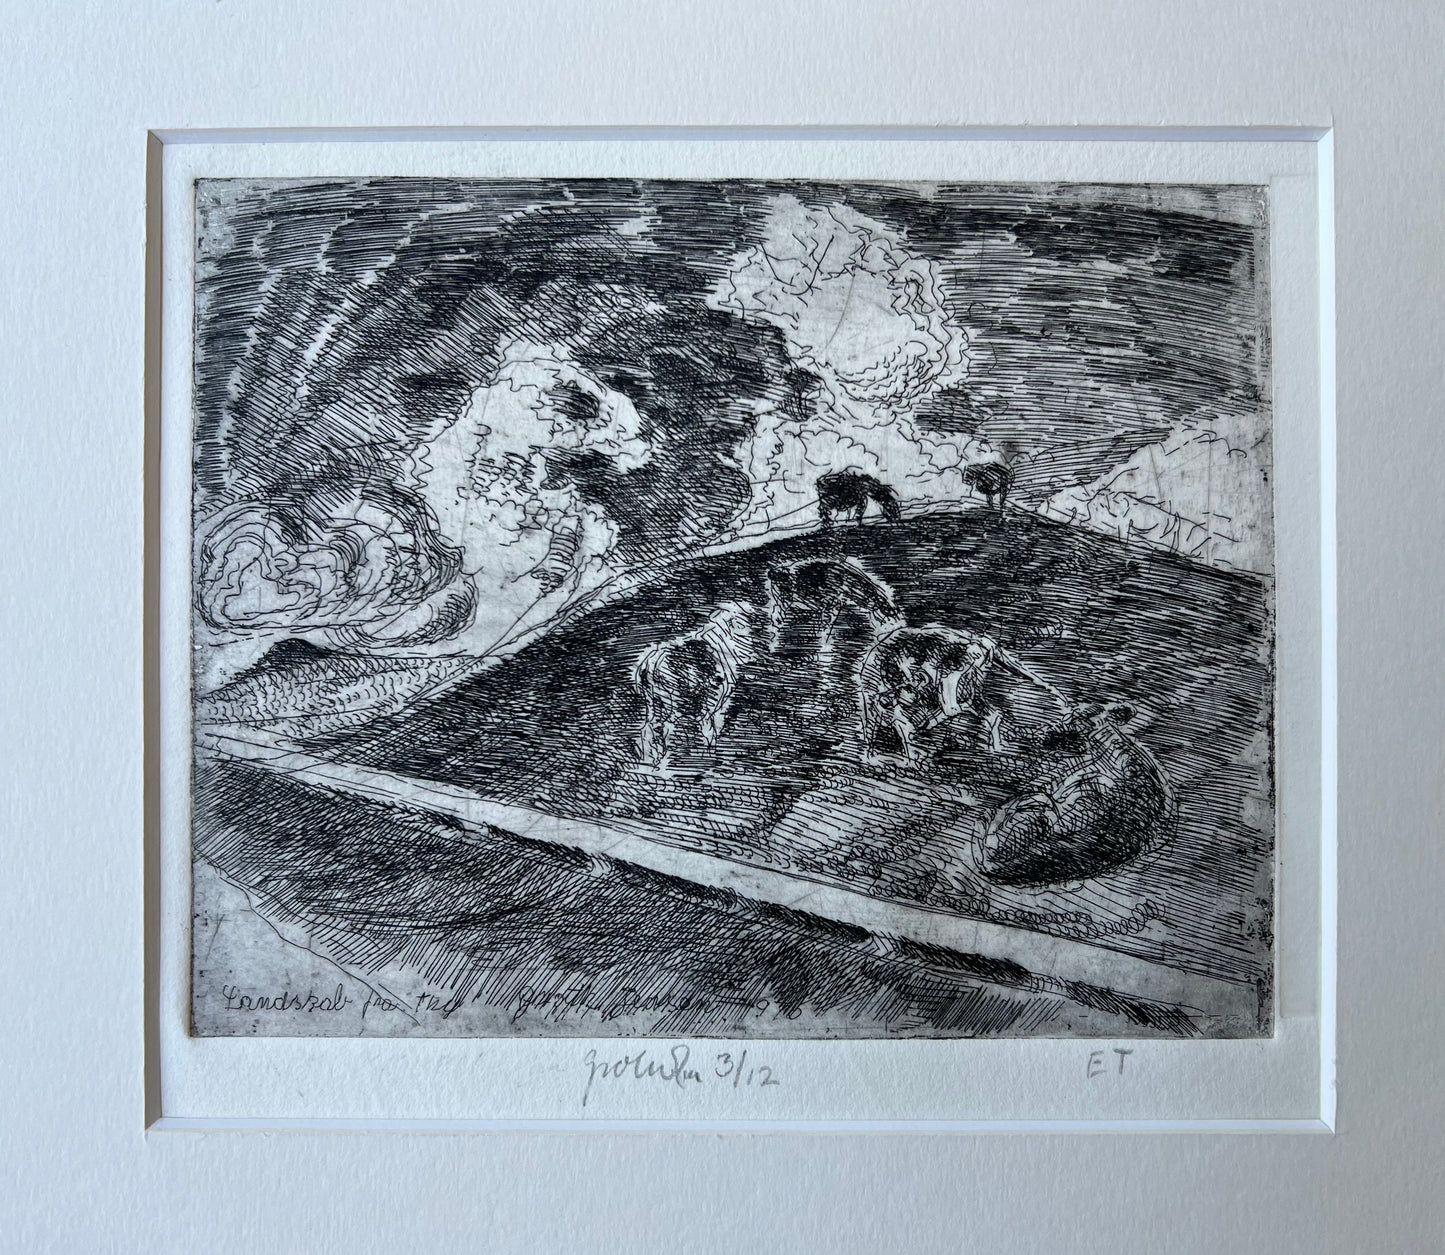 Jens Peter Groth-Jensen. "Landscape from Thy", 1970